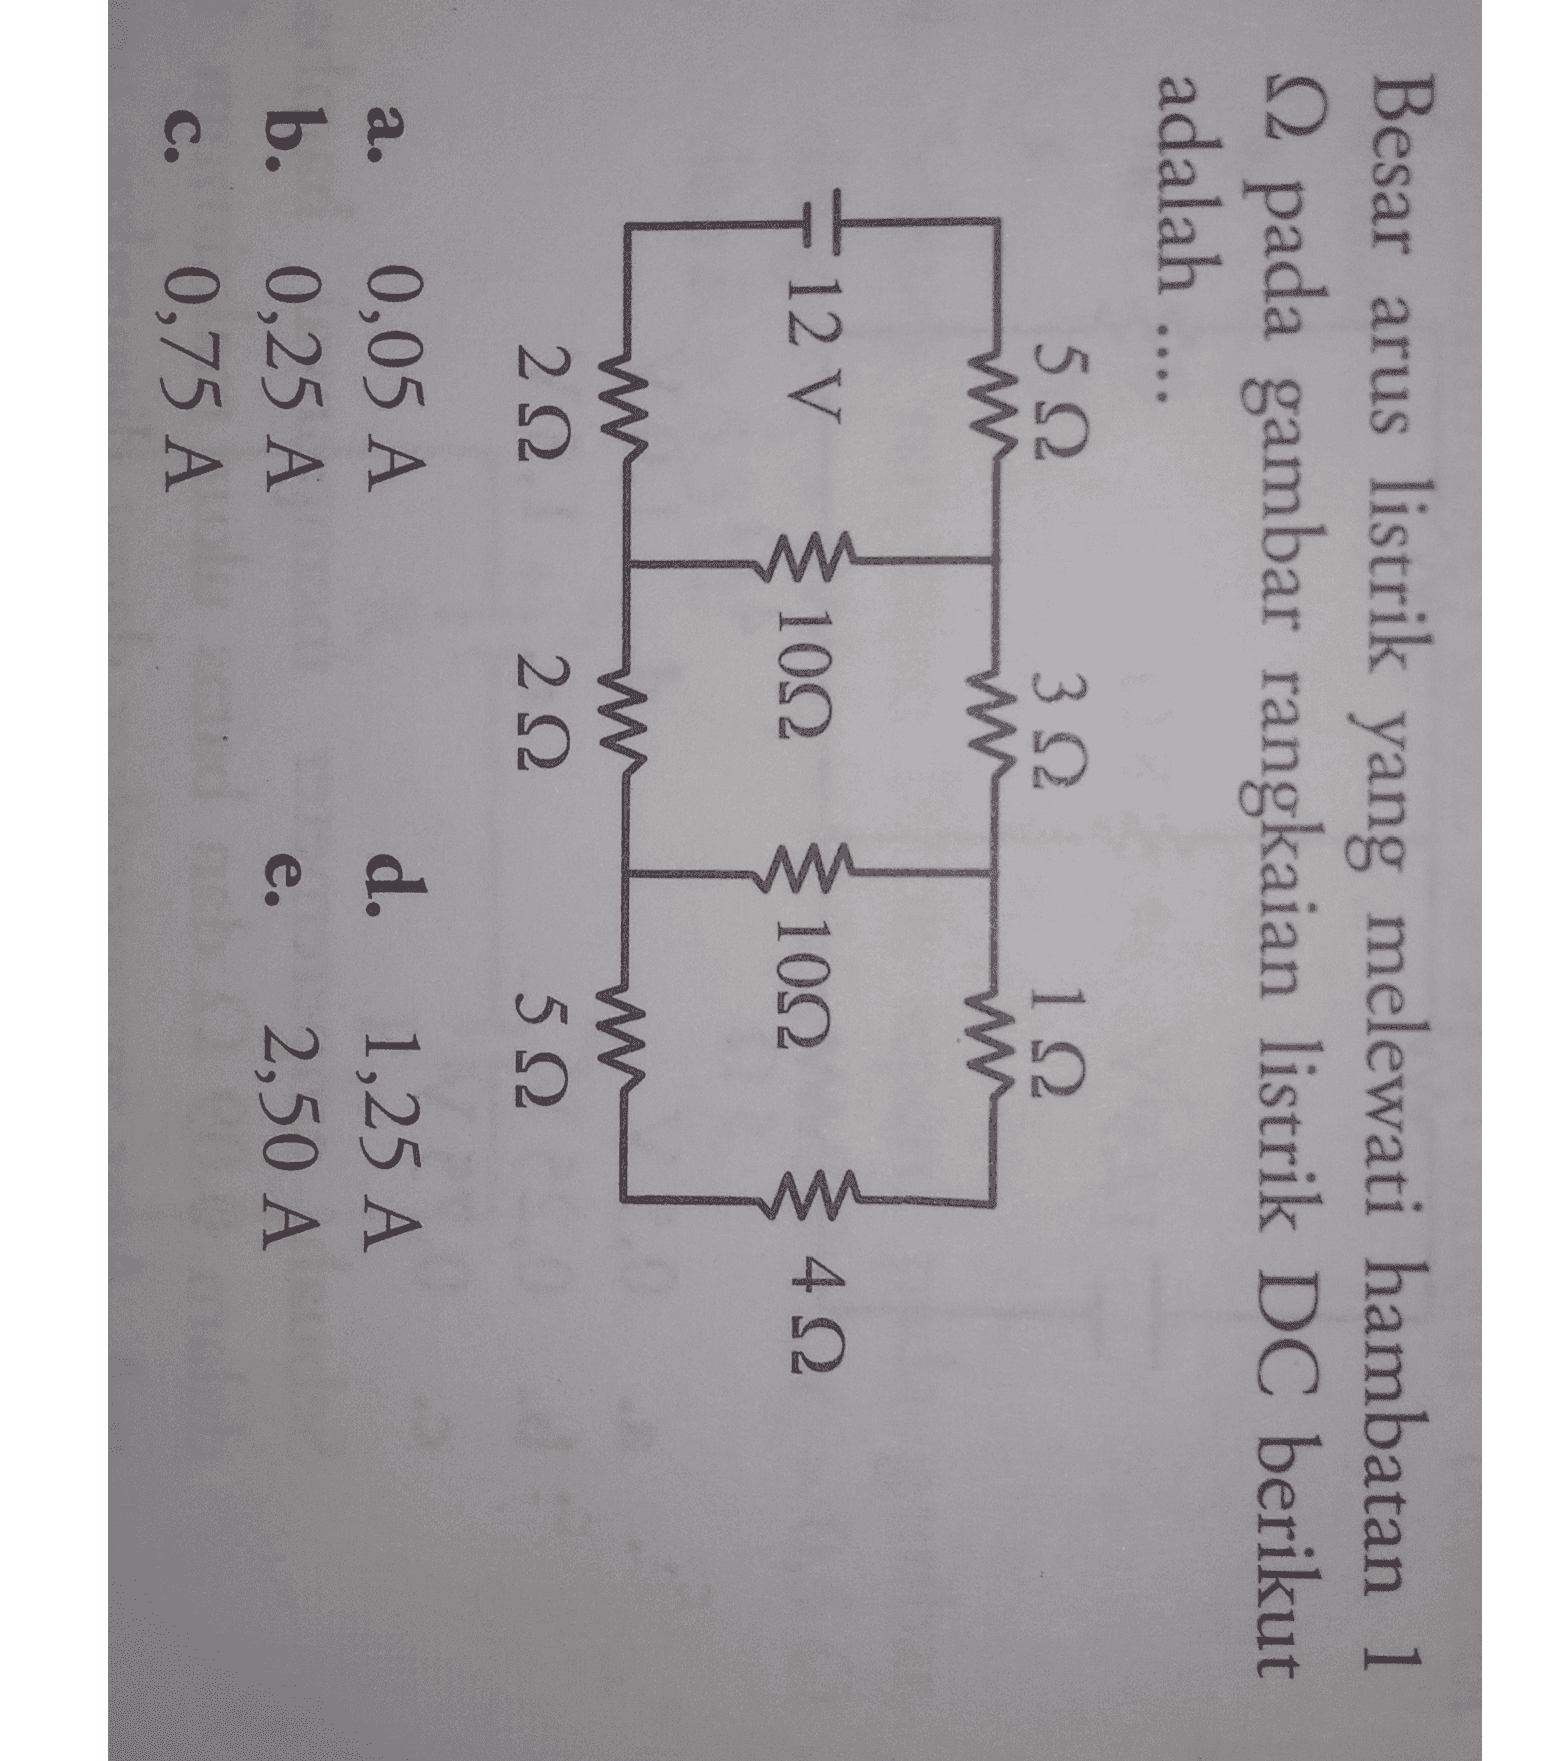 Besar arus listrik yang melewati hambatan 1 2 pada gambar rangkaian listrik DC berikut adalah .... 5 Ω MW- 1 Ω 3 Ω W 12V 10Ω 10Ω WW 4 Ω WW 2 Ω W 2 Ω w WW 5 Ω a. 0,05 A b. 0,25 A 0,75 A d. e. 1,25 A 2,50 Α C. 